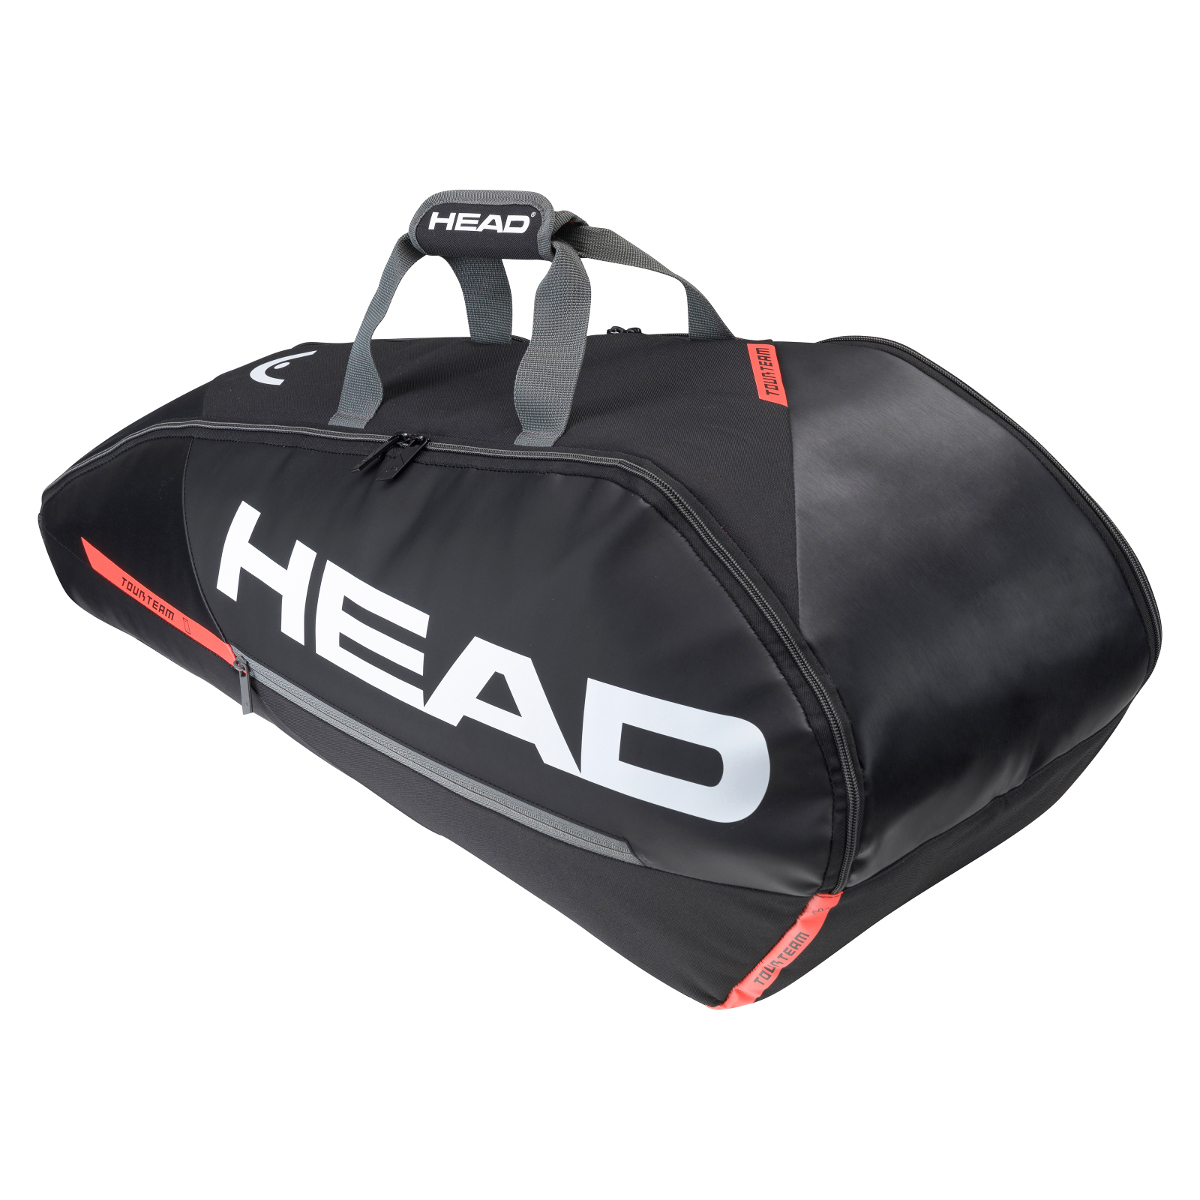 HEAD Core 6R Combi Tennistasche Schwarz Rot 